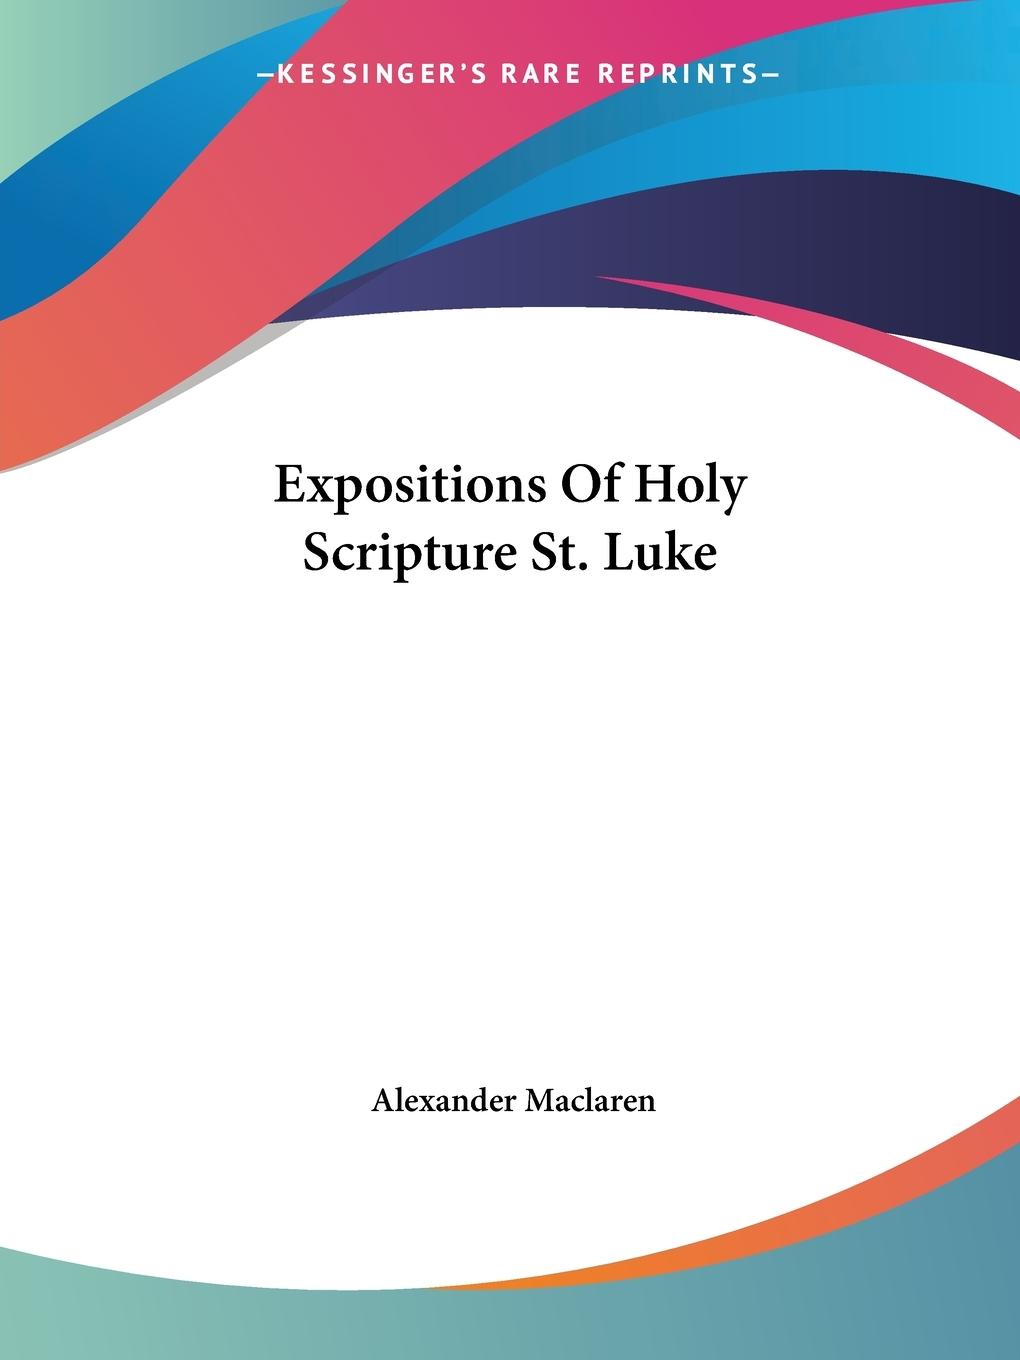 Expositions Of Holy Scripture St. Luke - Maclaren, Alexander